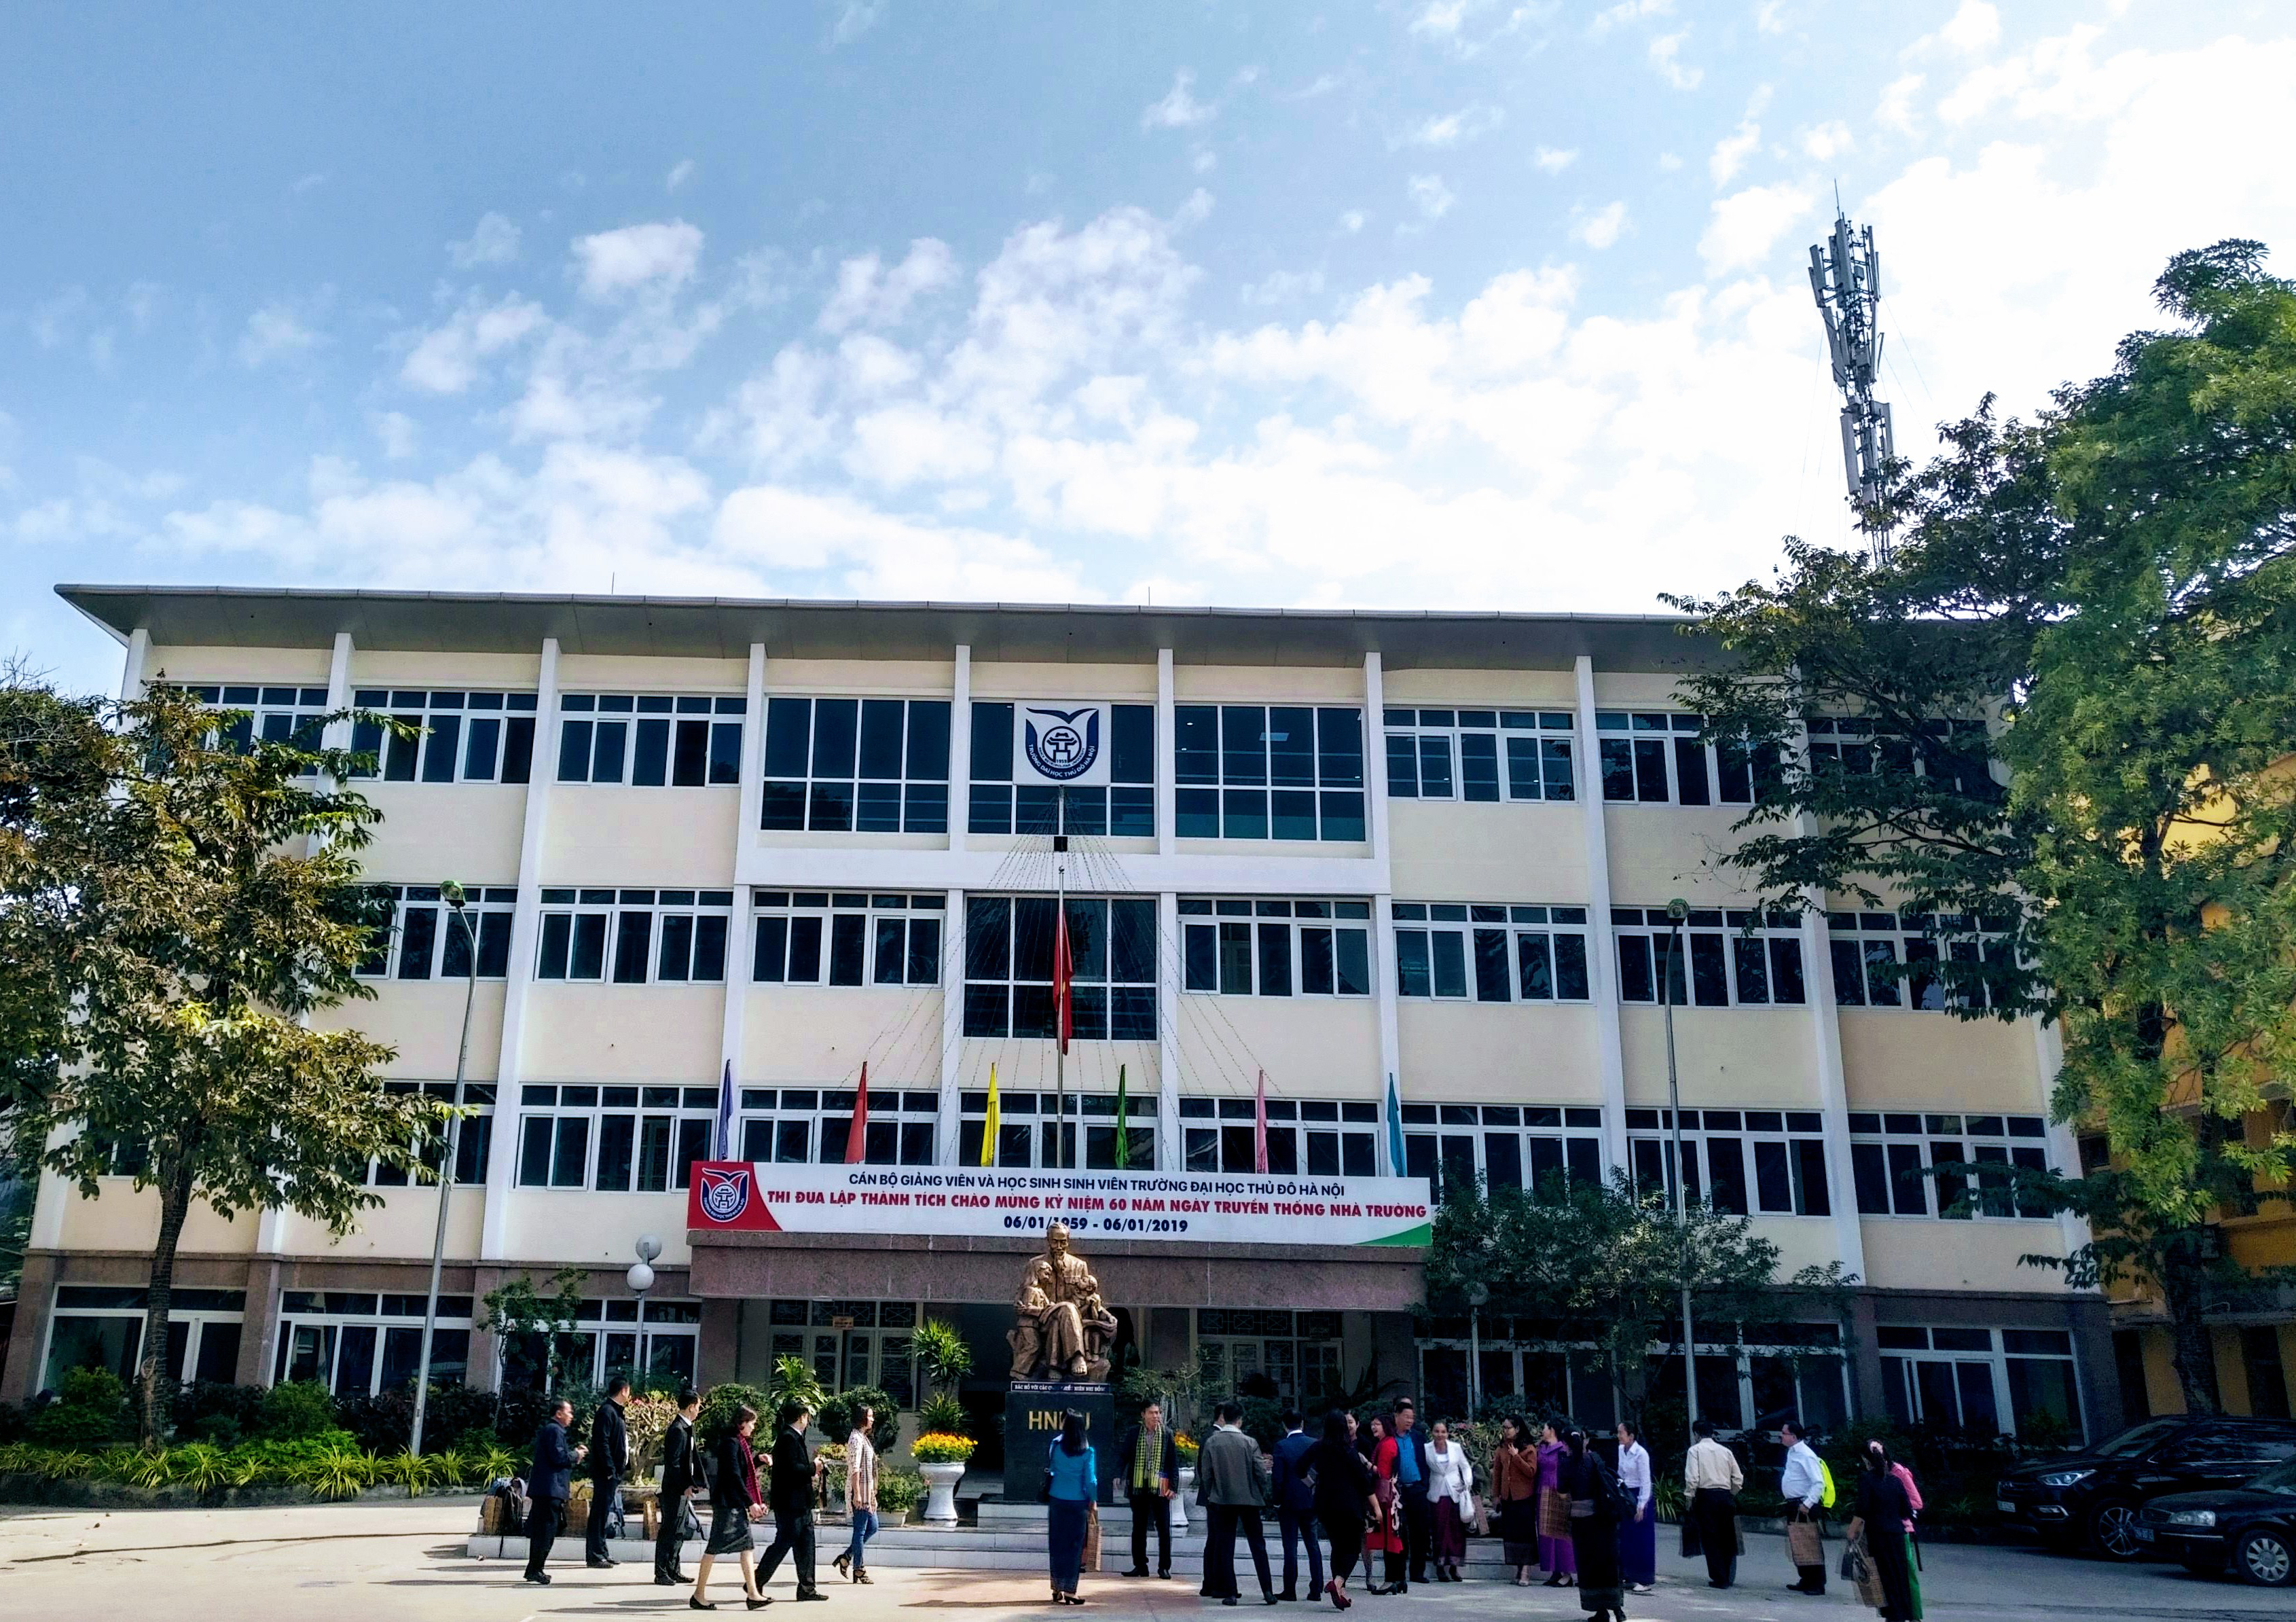 Triết lý giáo dục, sứ mệnh, tầm nhìn và các giá trị cốt lõi của trường Đại học Thủ đô Hà Nội